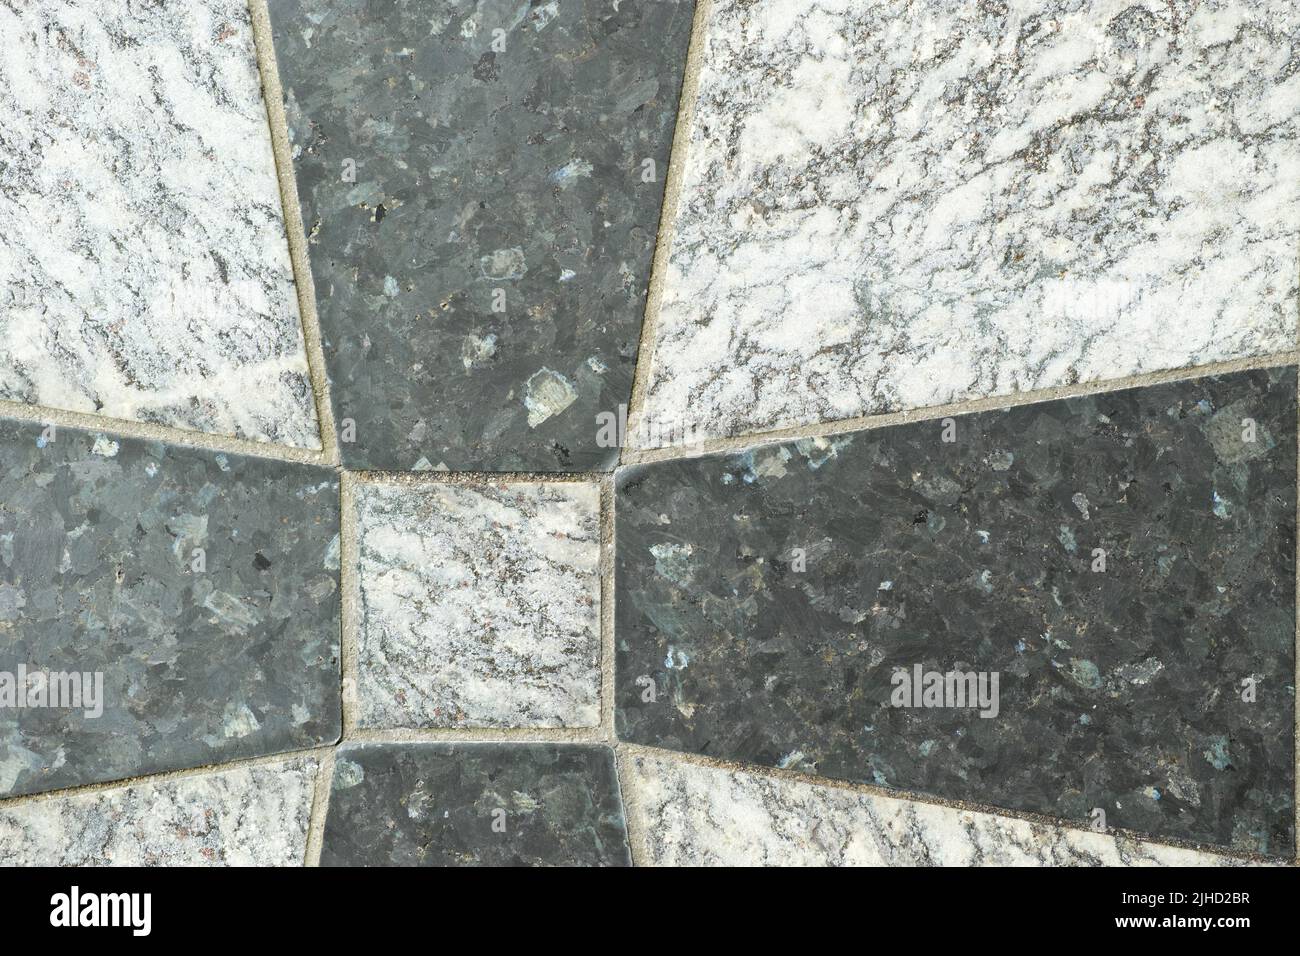 Nahaufnahme von schwarzen und grauen Granitfliesen auf einem Boden. Kreatives Architekturdesign von Granitfliesen, die zu einem Kreuzmuster zementiert sind. Textur Stockfoto